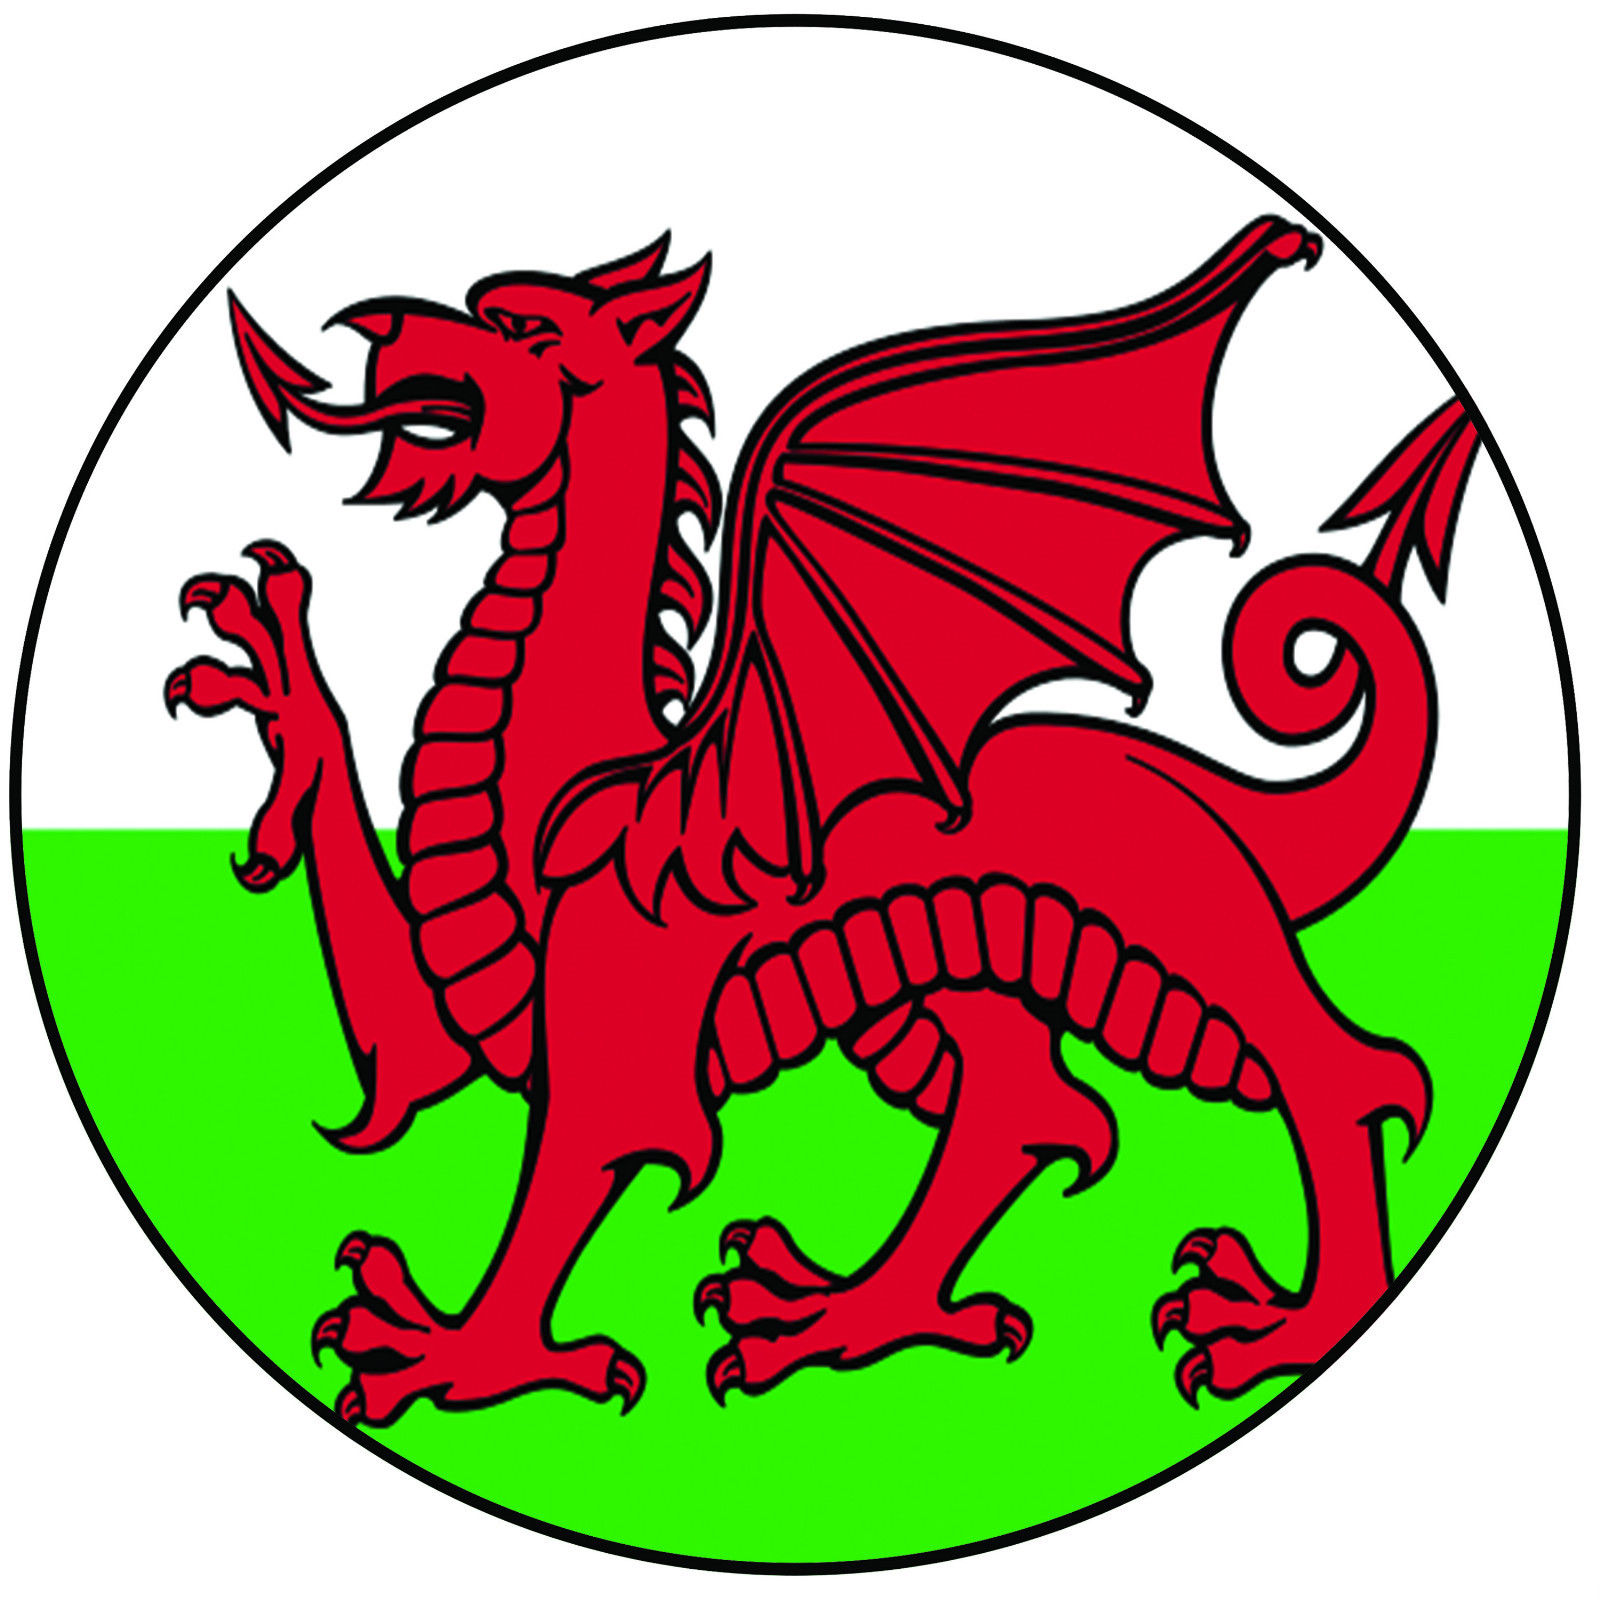 Welsh. Драгон флаг. Герб Кардиффа. Флаг с драконом. Wales герб.